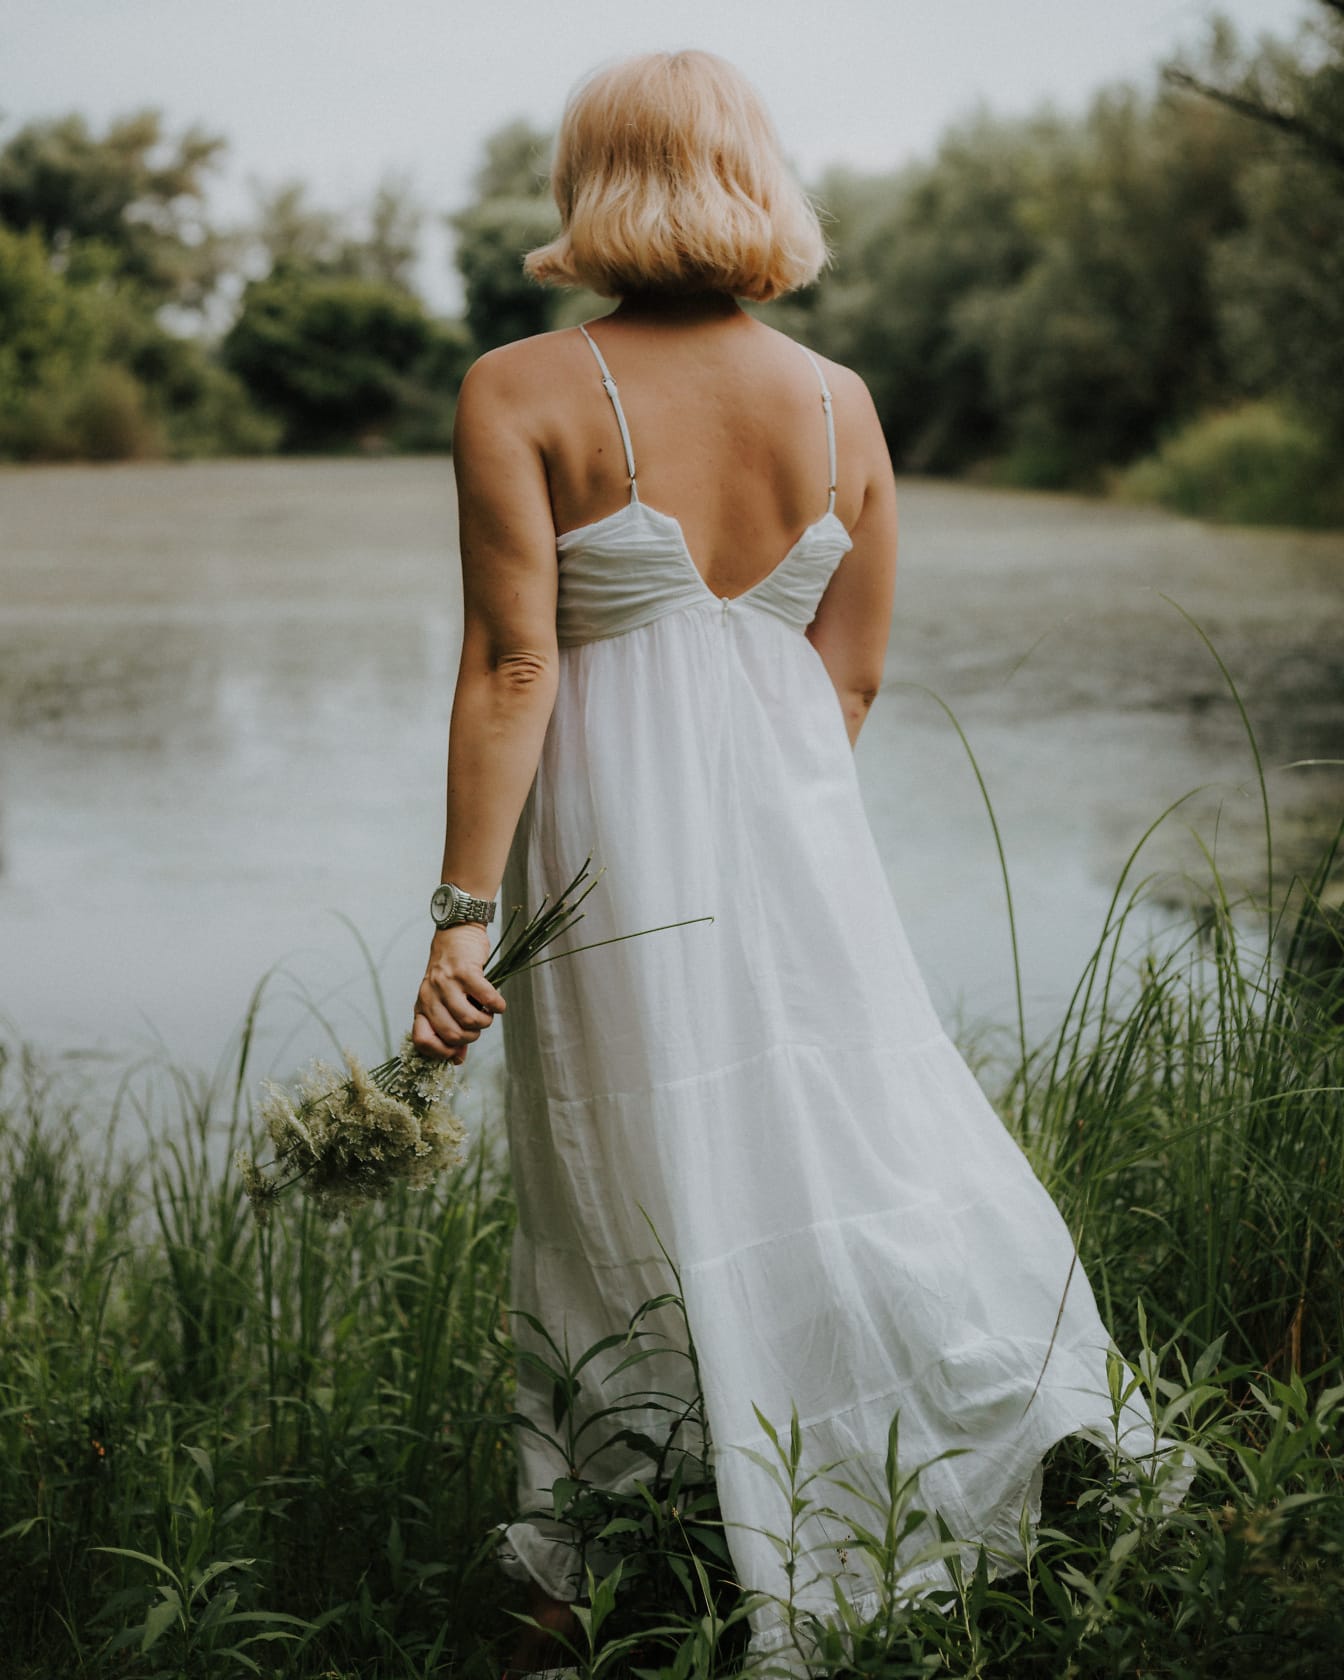 Klasična staromodna bijela haljina bez leđa na plavom foto modelu